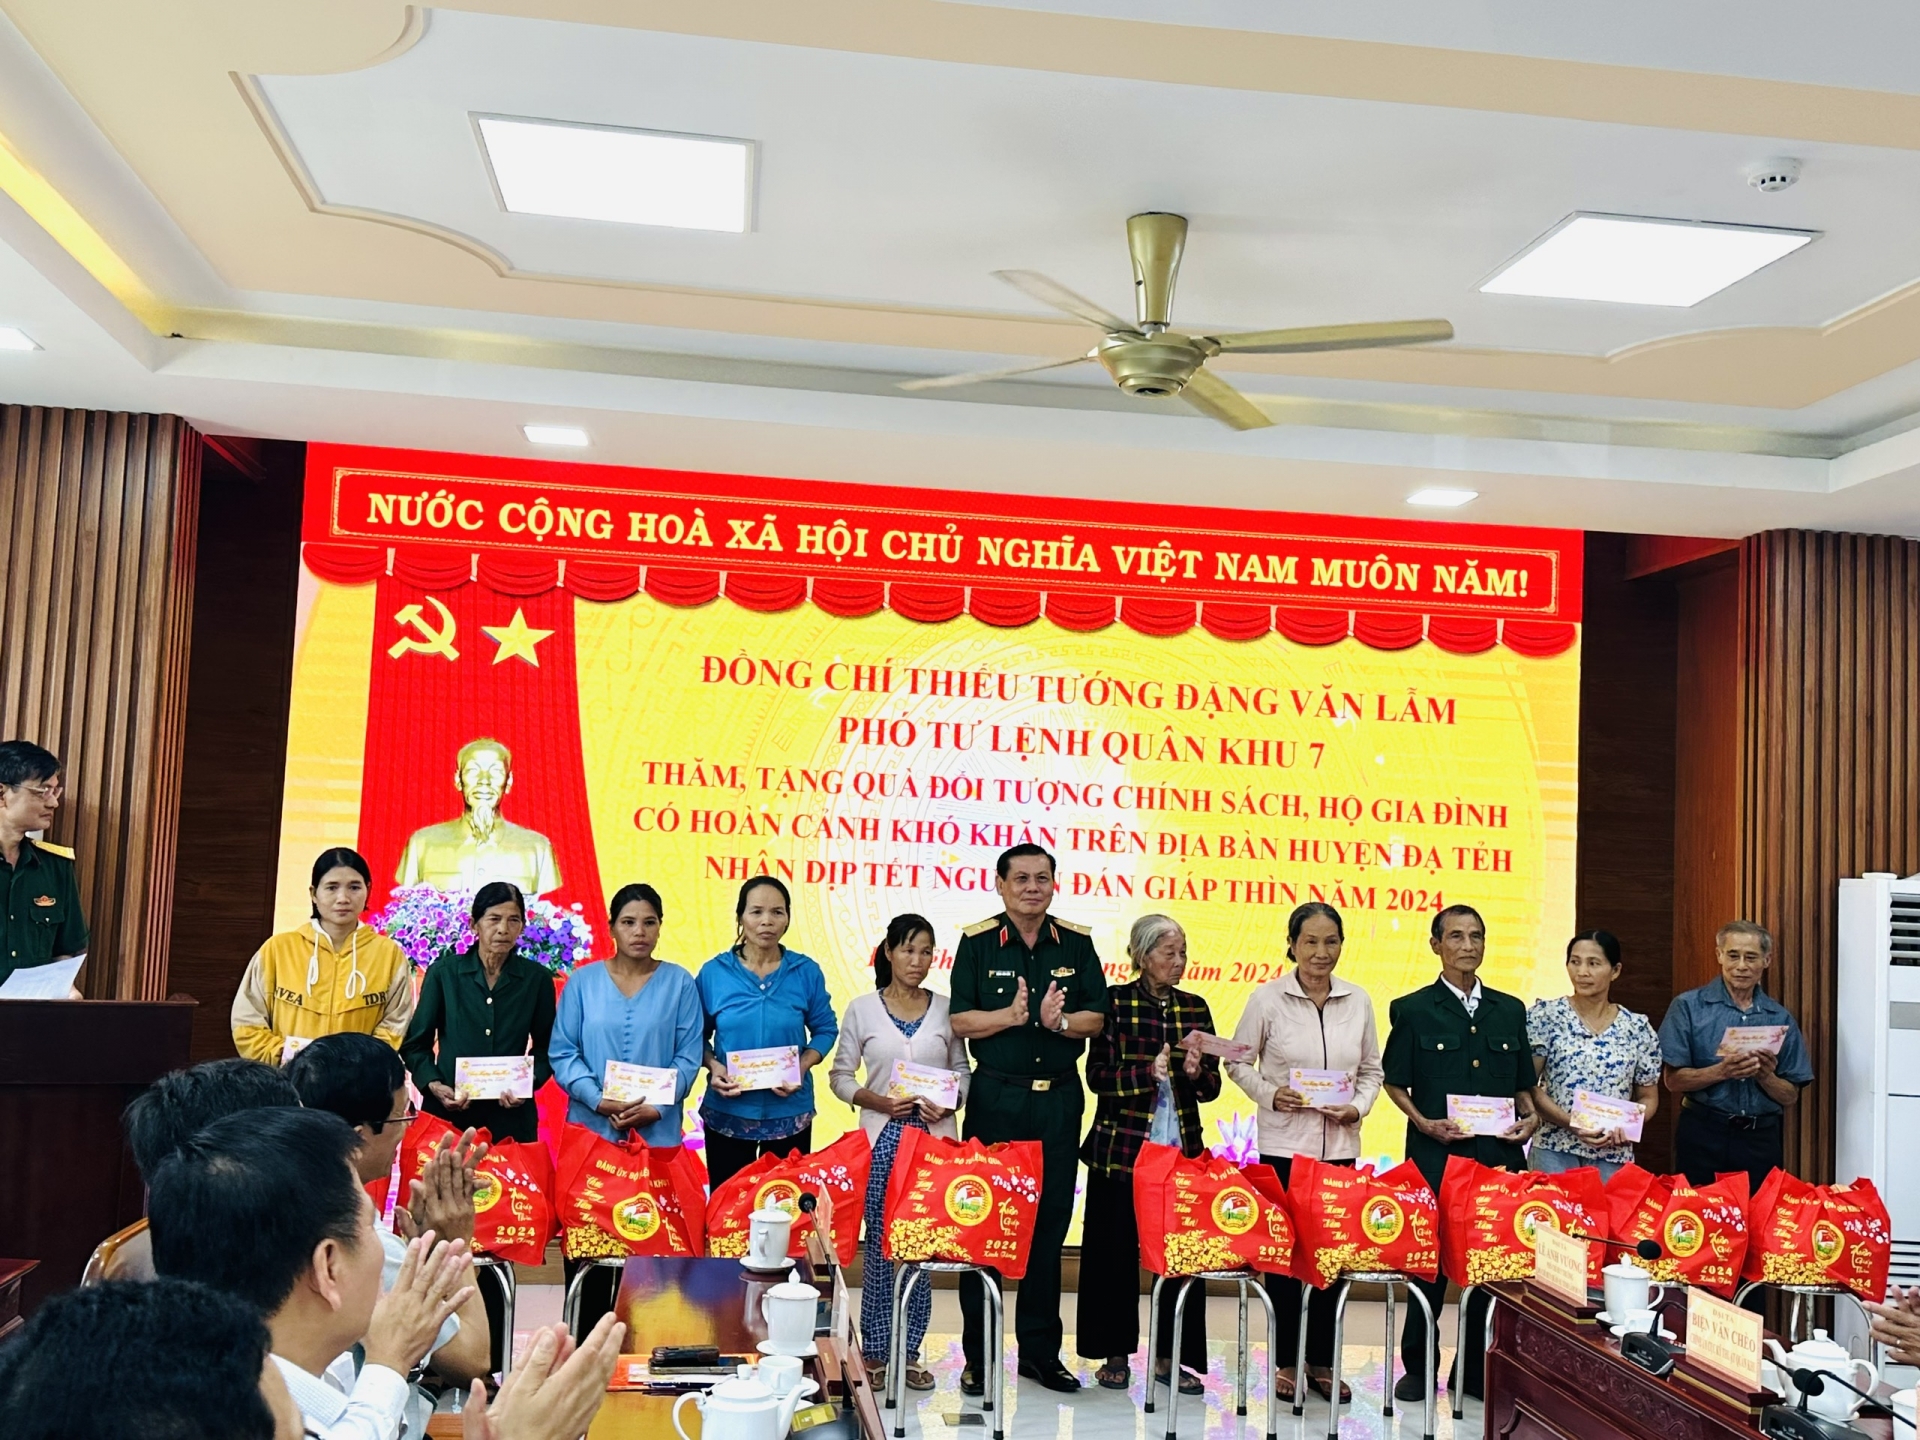 Bộ Tư lệnh Quân khu 7, Thiếu tướng Đặng Văn Lâm đã thăm hỏi và trao tặng 20 suất quà cho các gia đình chính sách, hộ nghèo trên địa bàn huyện.